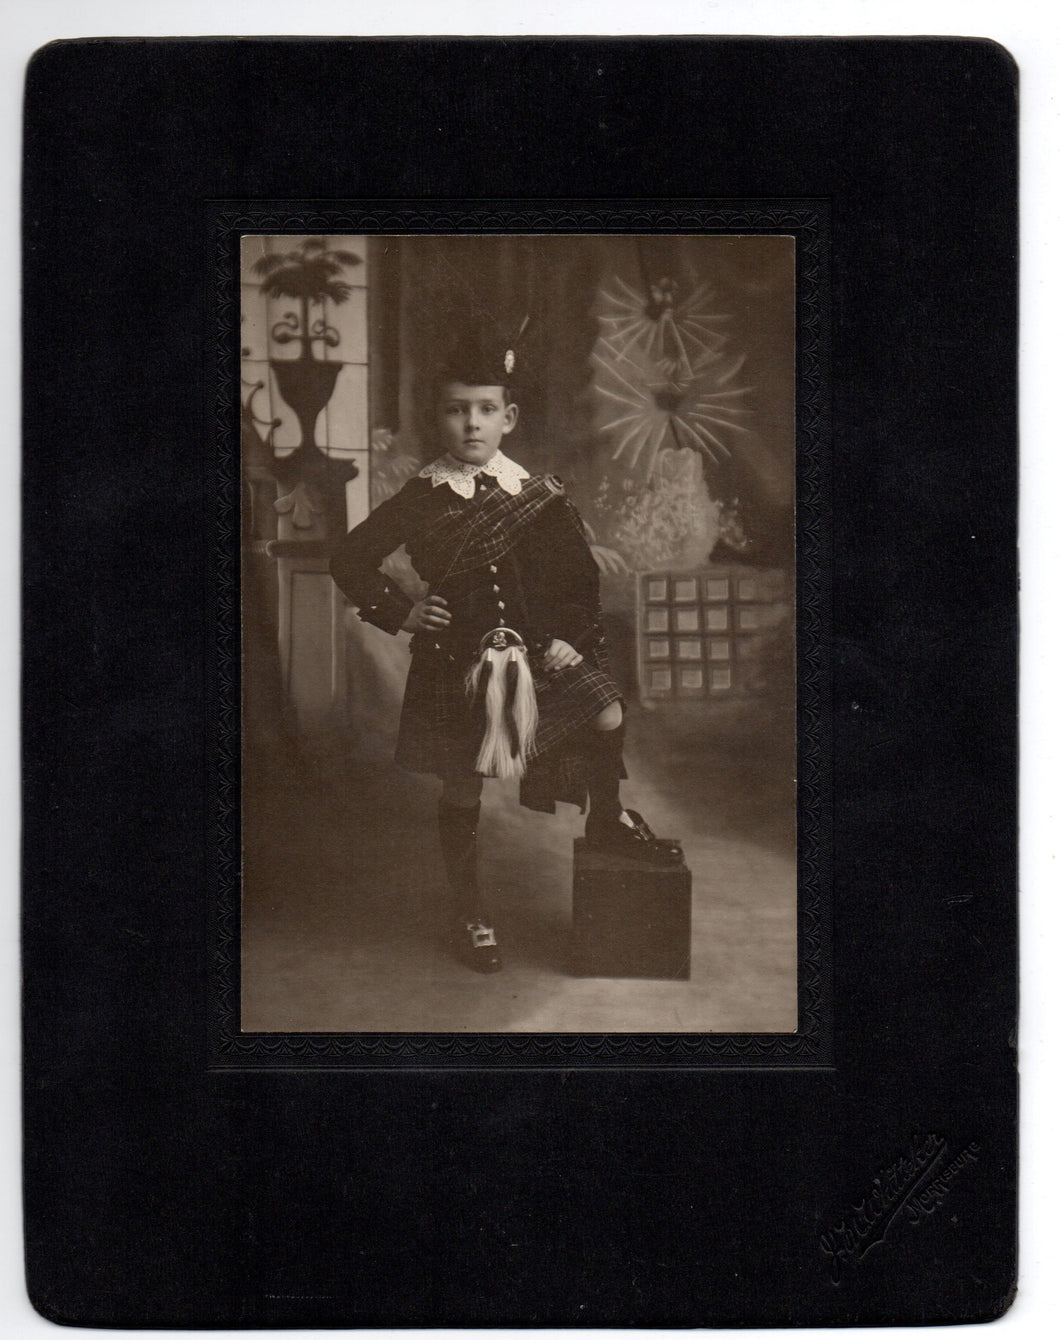 Photo of a boy in kilt